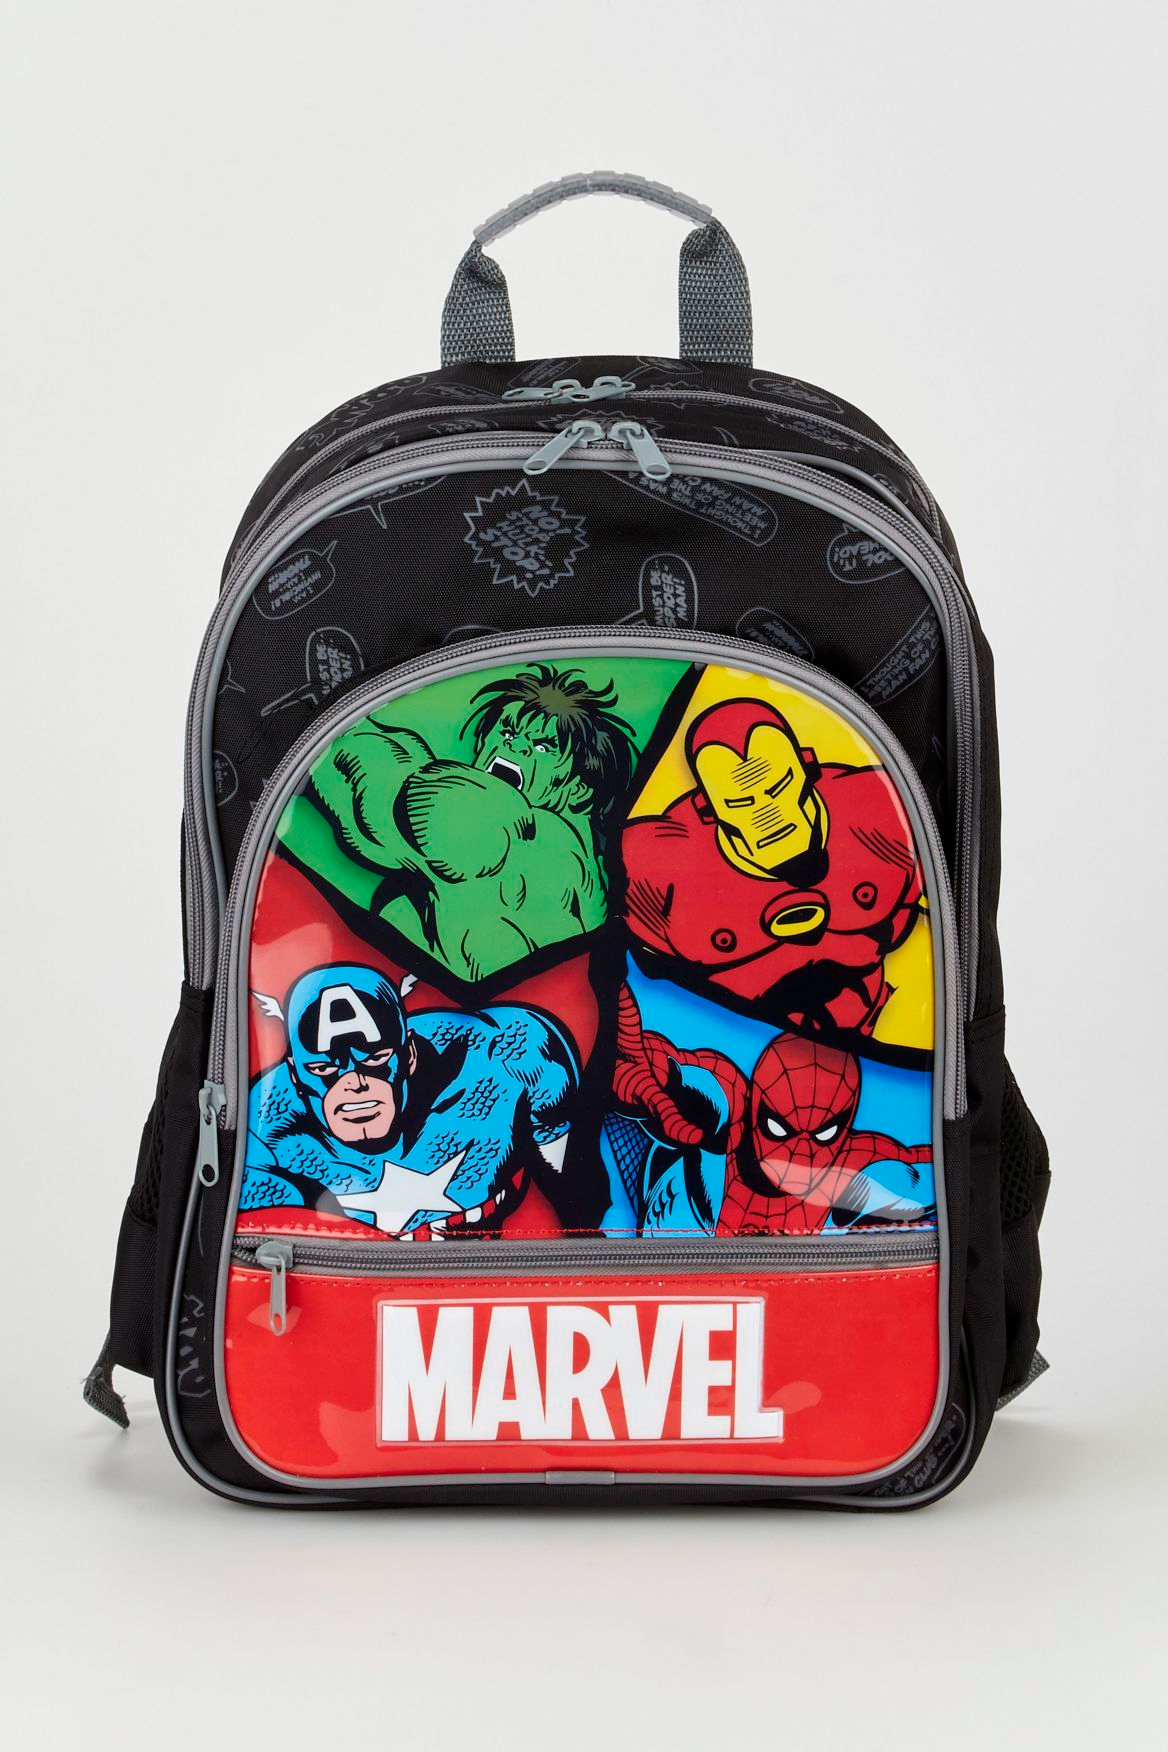 Marvel Avengers Boys Backpack Superhero Spider-Man Kids Backpack 16 inch